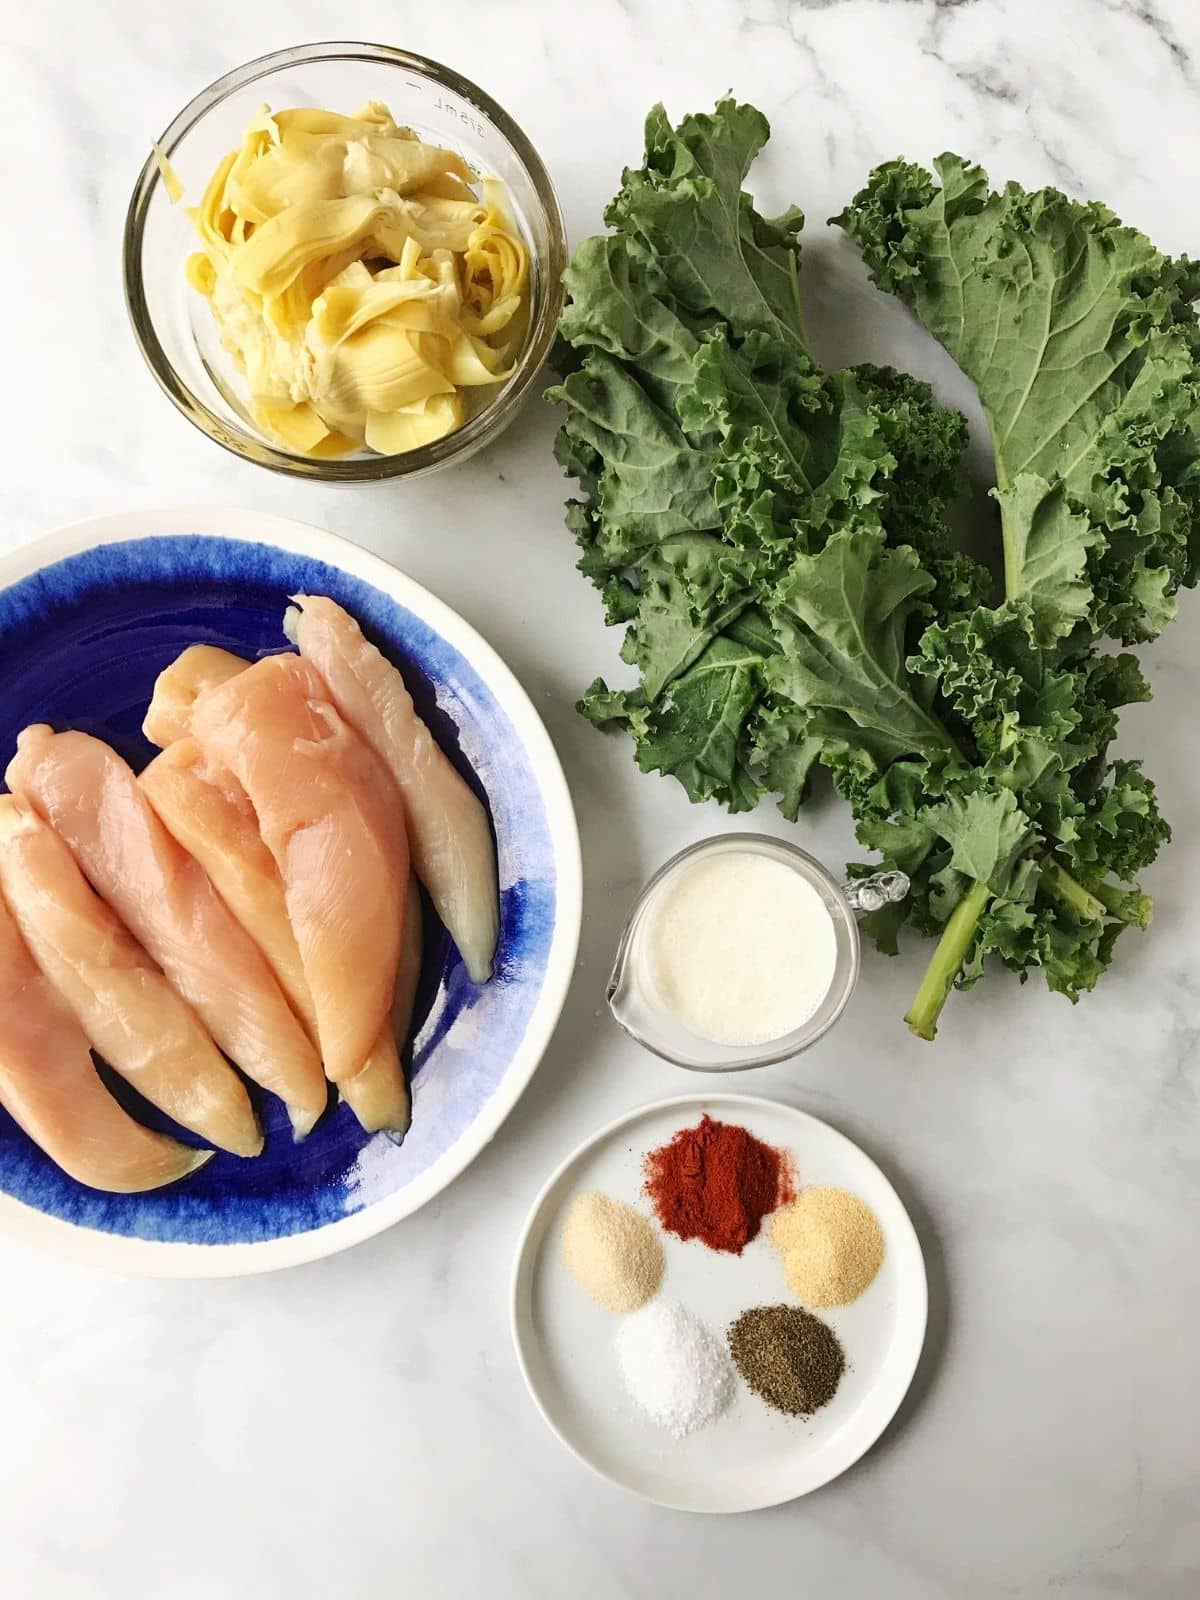 array of ingredients - chicken, kale, artichokes, seasonings, and cream